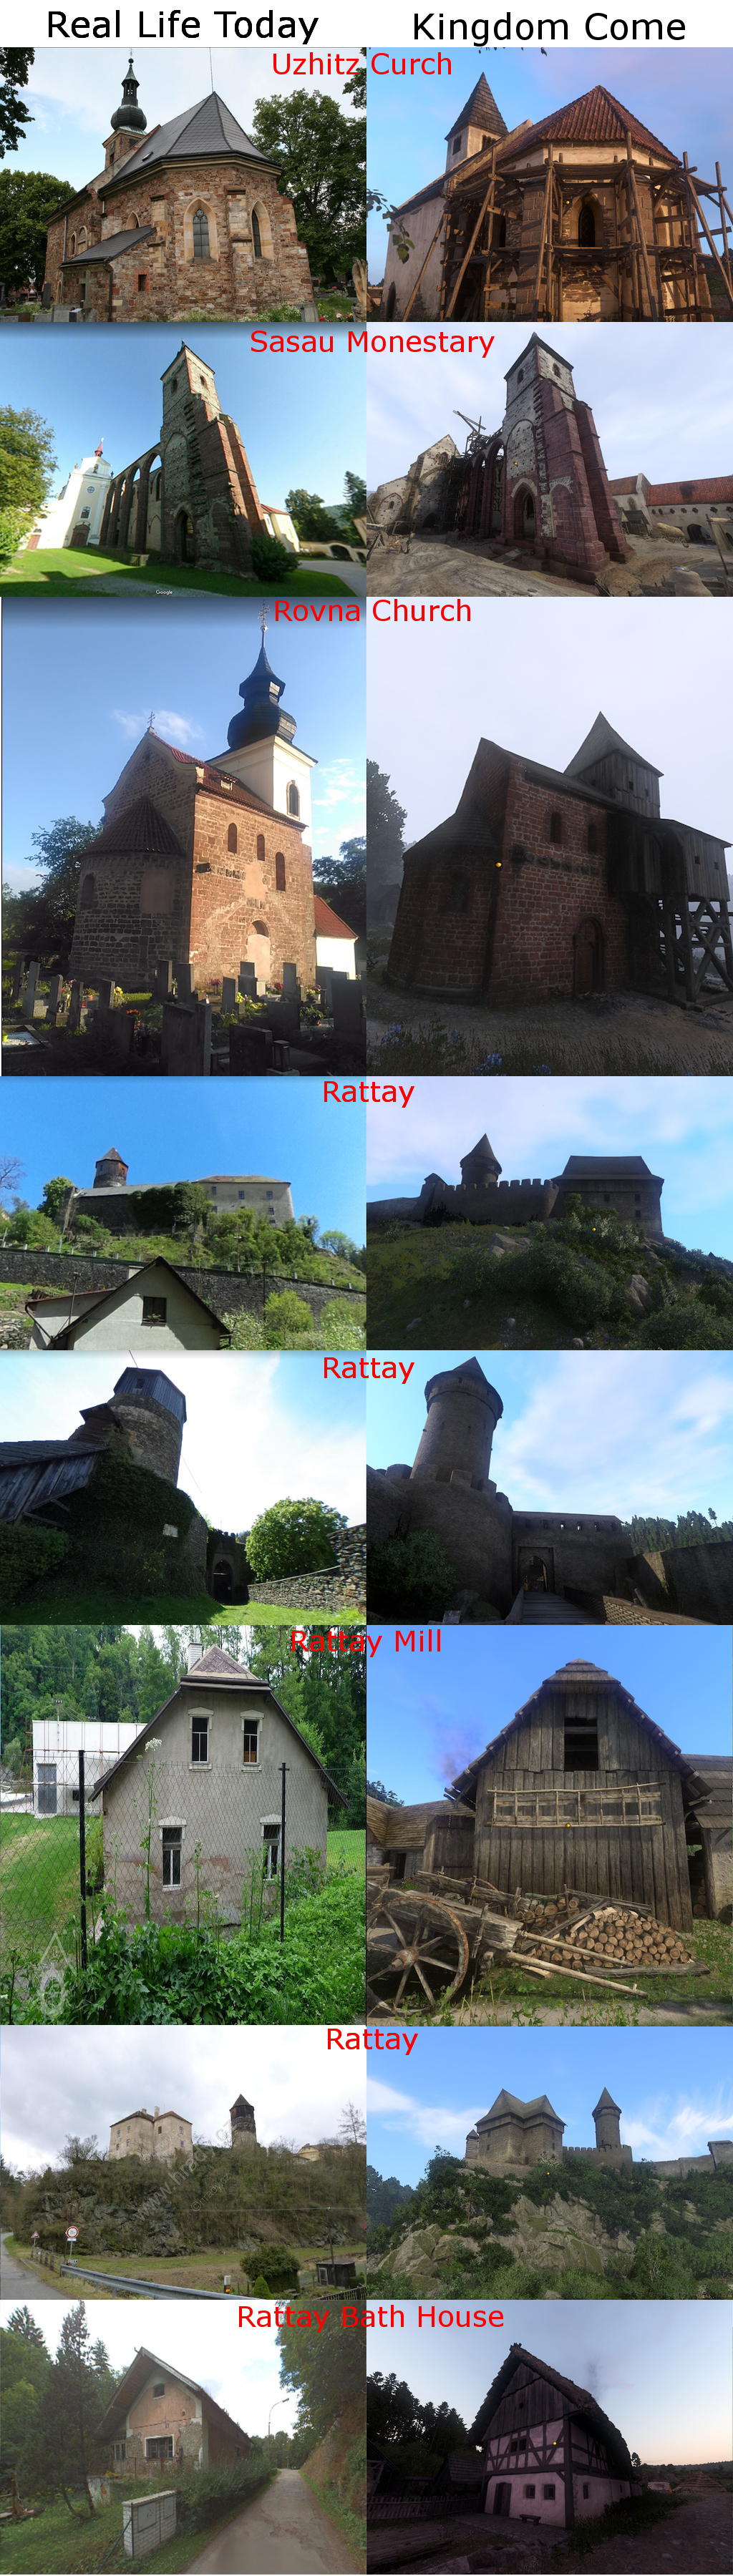 Фото: сравнение локаций Kingdom Come с реальными местами, которые сохранились со средних веков. - Изображение 2